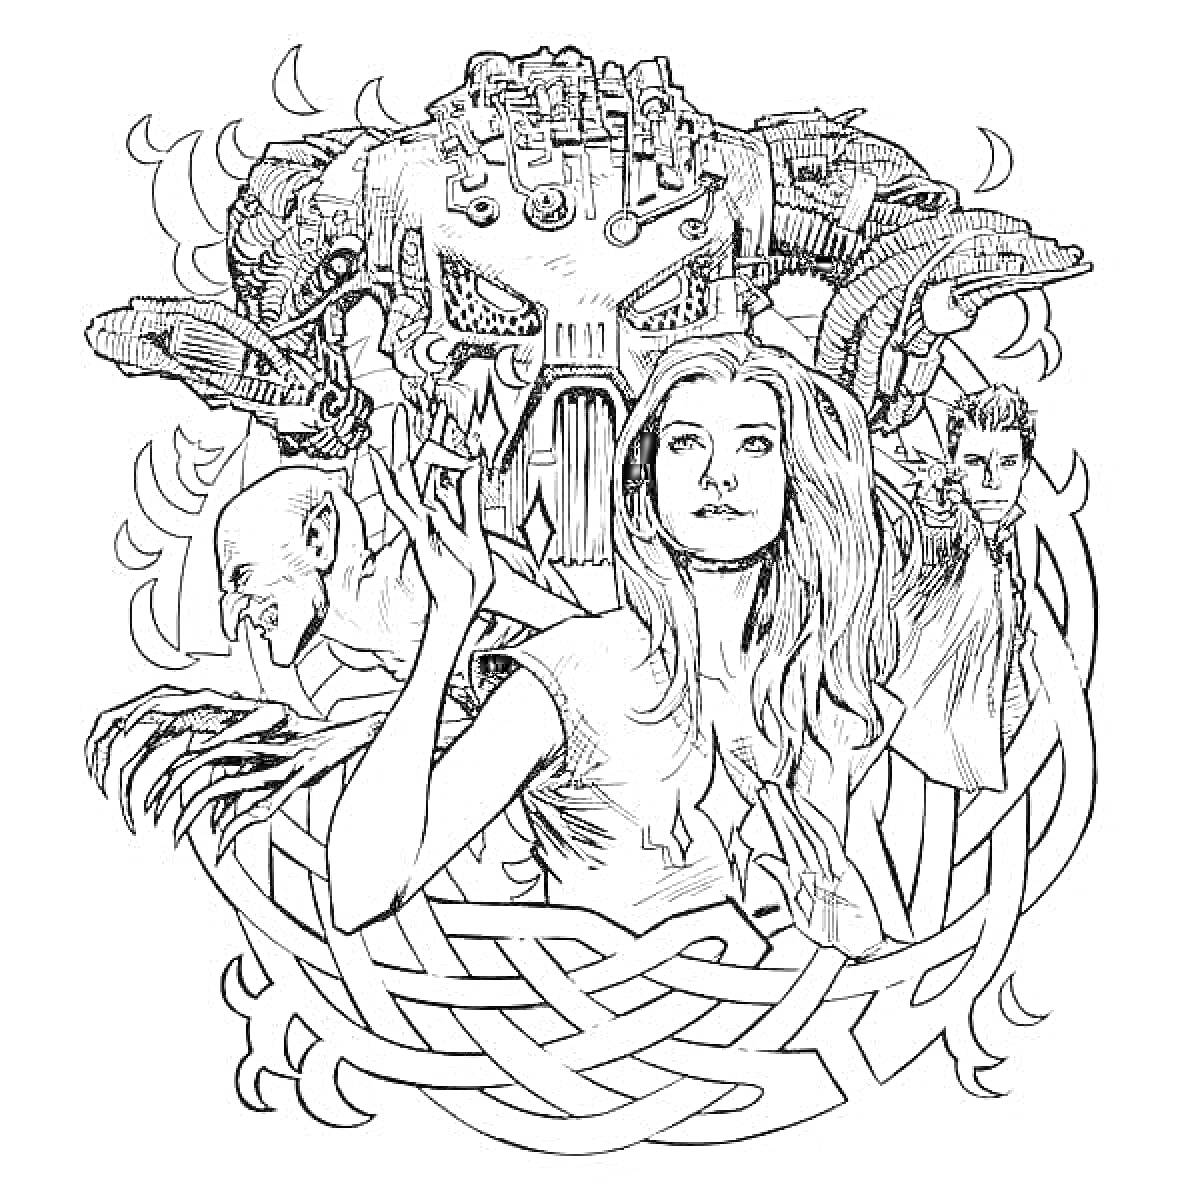 Раскраска Голова монстра с многочисленными деталями, женщина с длинными волосами, мужчина в костюме, лысый человек с когтями, фон в виде узорного круга и огней